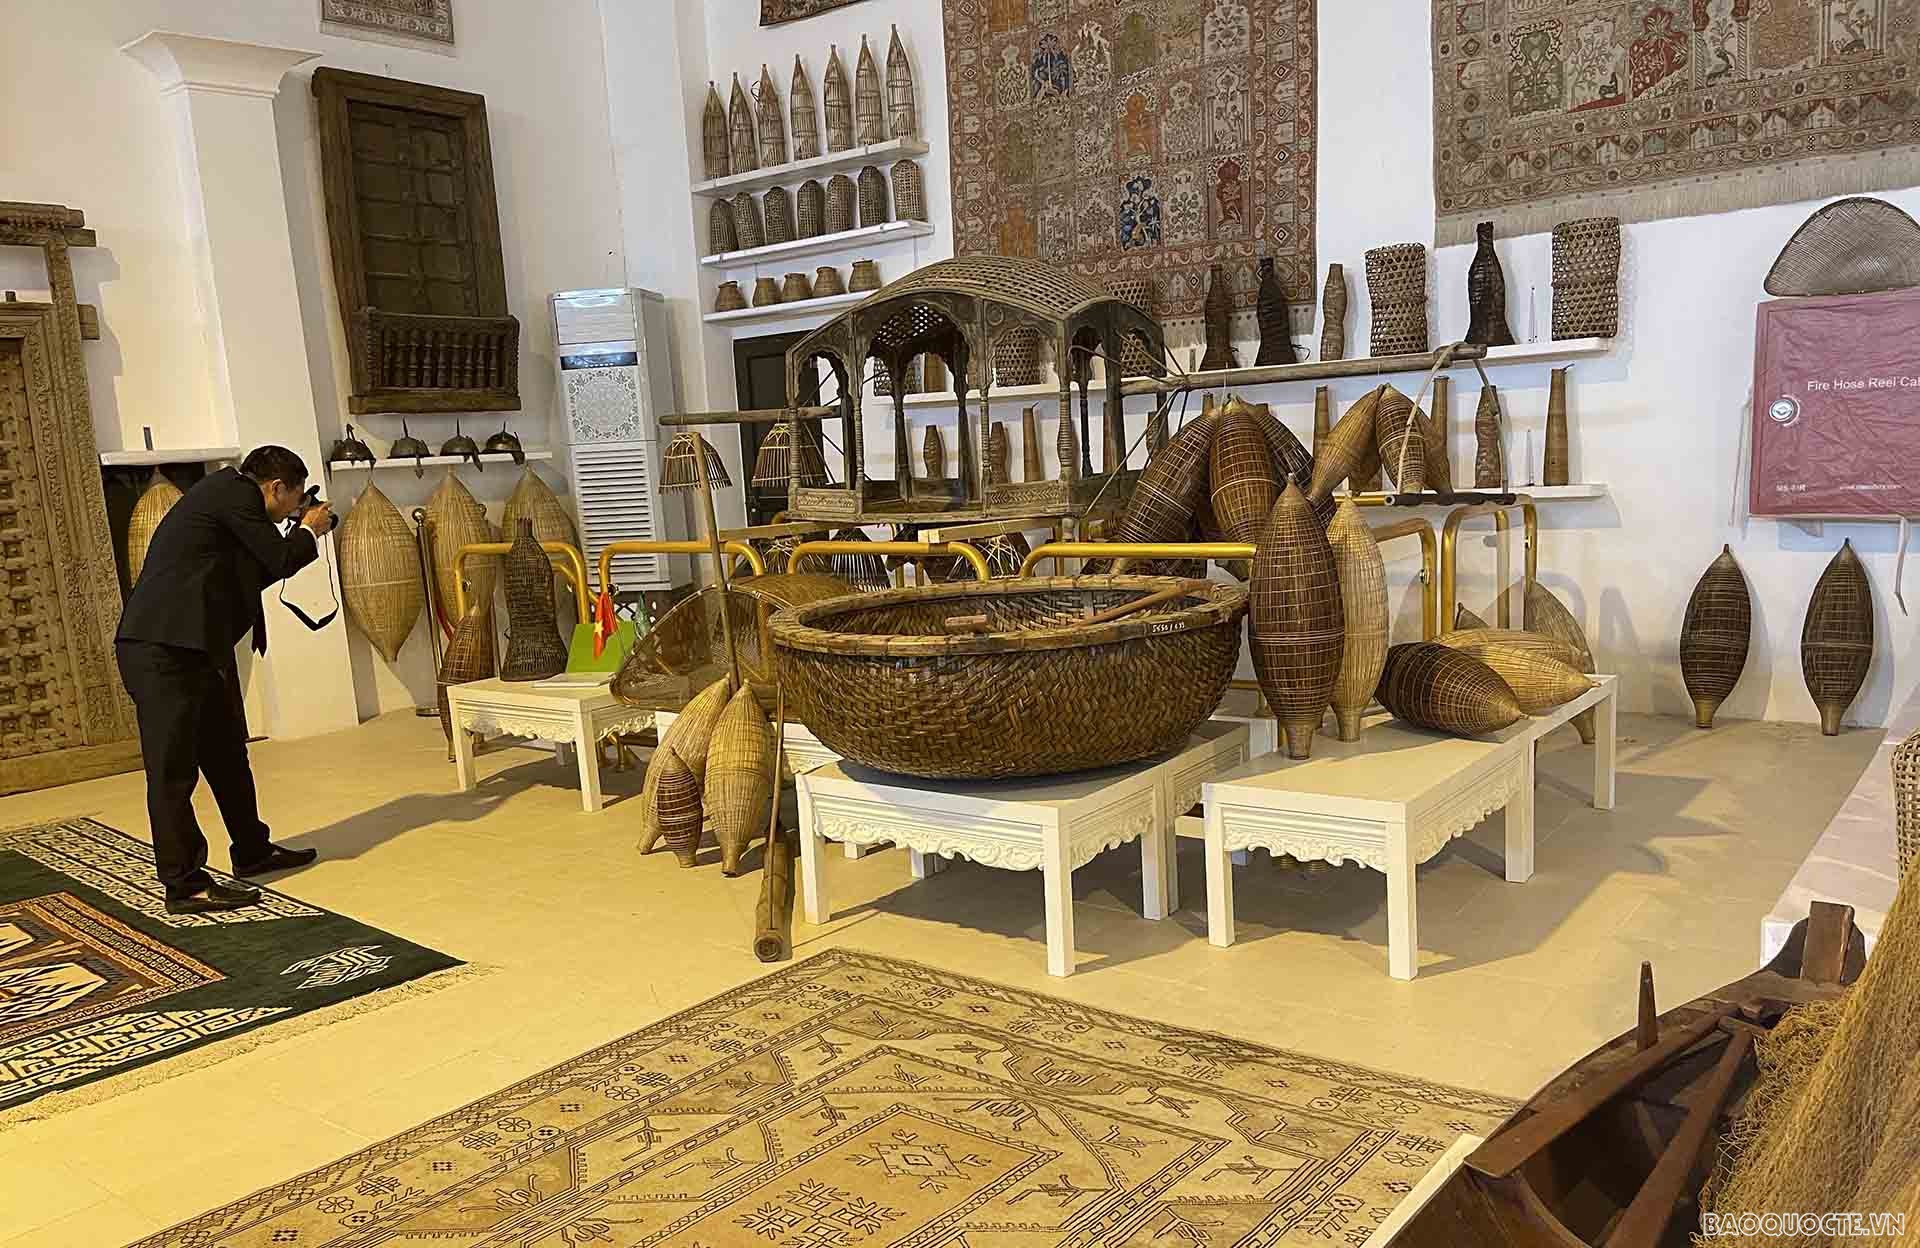 Khai trương Góc ngư cụ truyền thống của Việt Nam tại Saudi Arabia